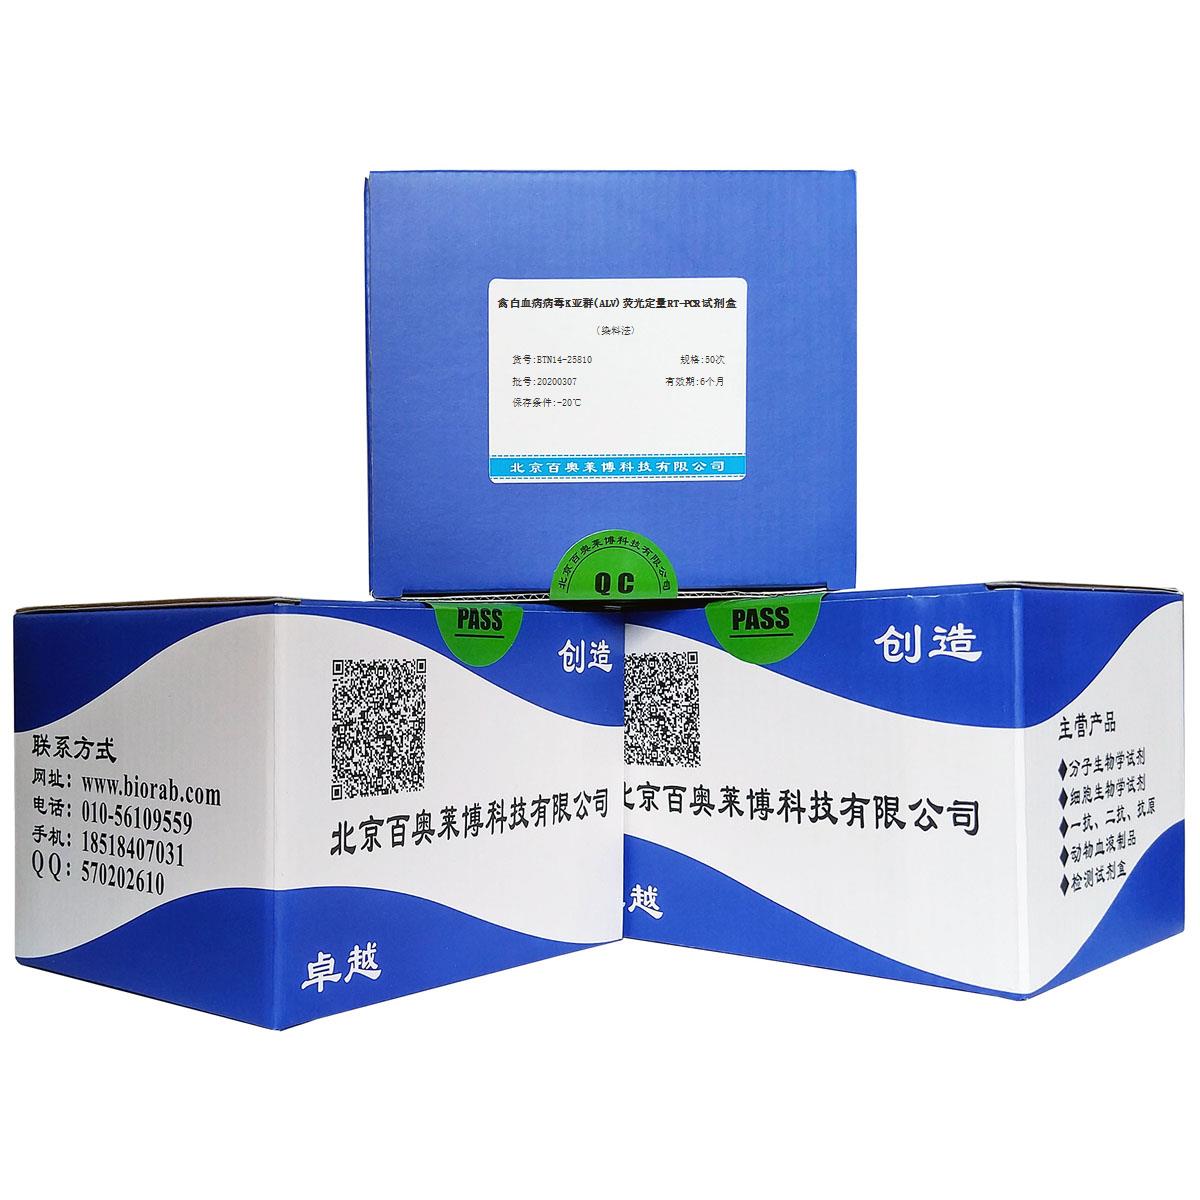 禽白血病病毒K亚群(ALV)荧光定量RT-PCR试剂盒(染料法)